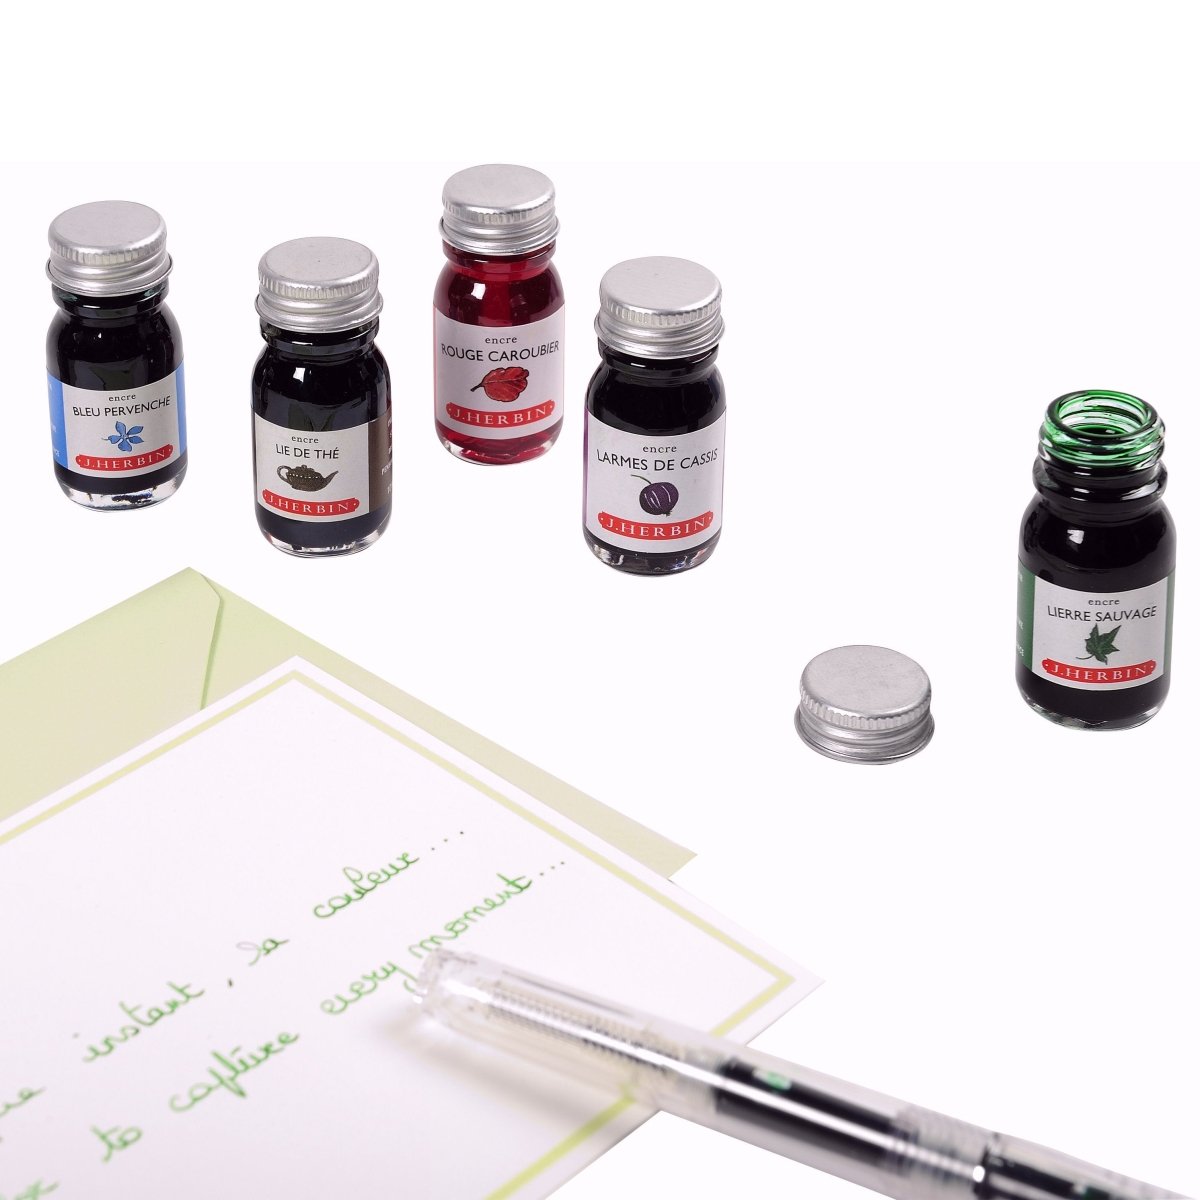 Herbin Ink Bottle (Violette Pensee - 10ML) 11577T - SCOOBOO - HB_INKBTL_VLTPENSEE_10ML_11577T - Ink Bottle